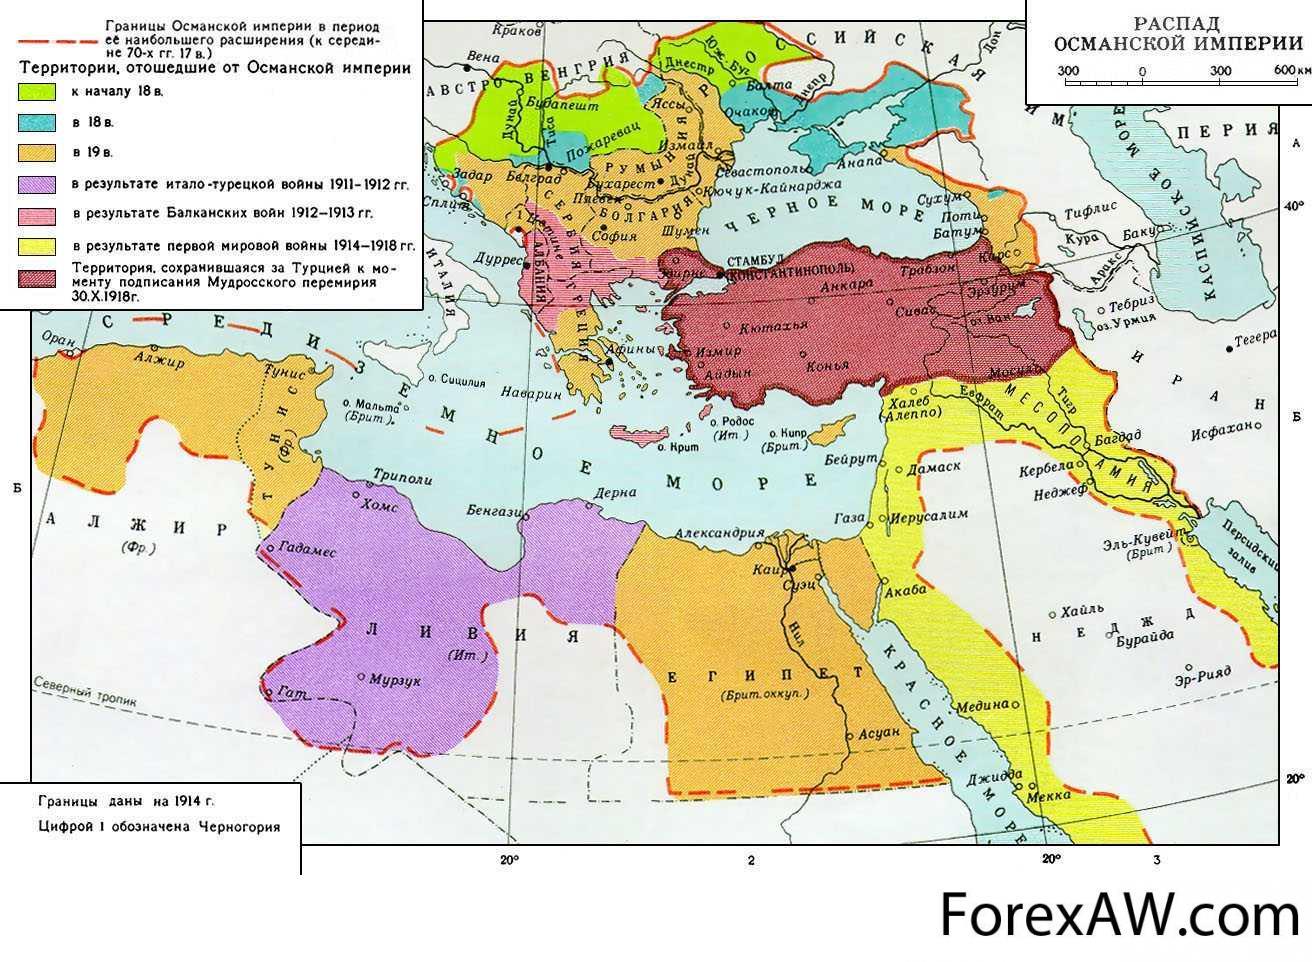 Заключение договора россии и османской империи